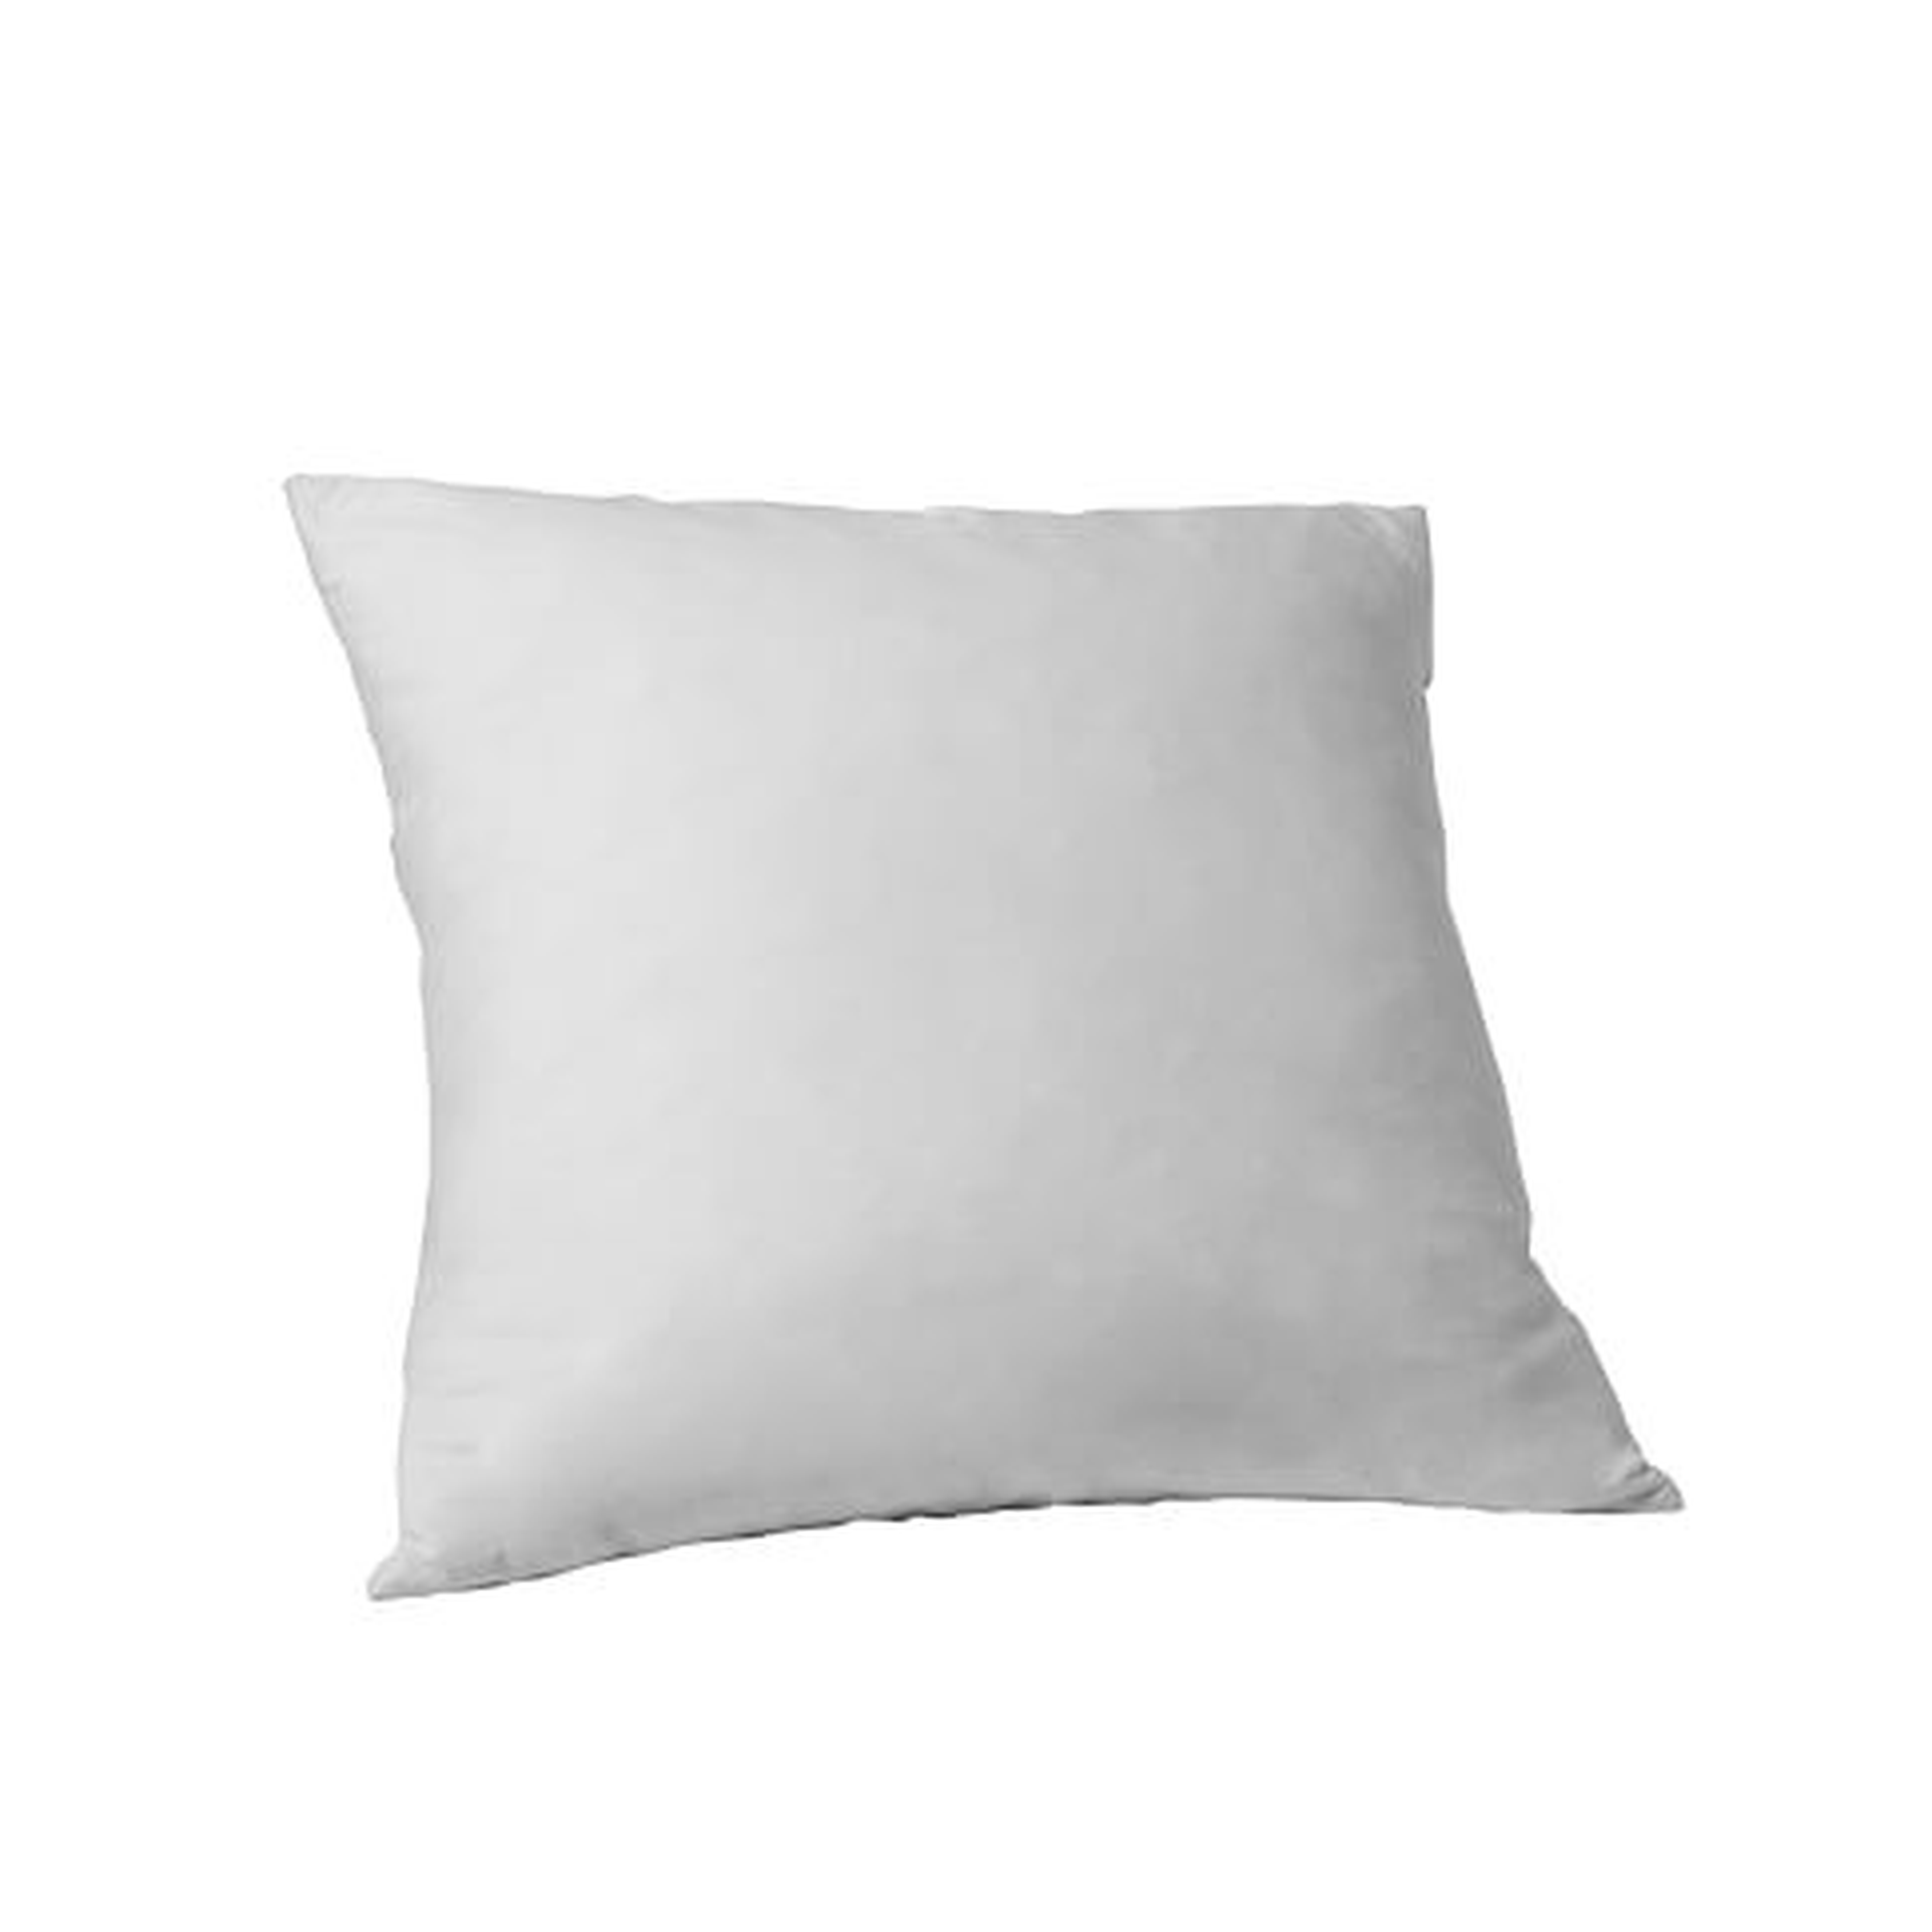 Pillow Insert - 20"x20" , Feather - West Elm